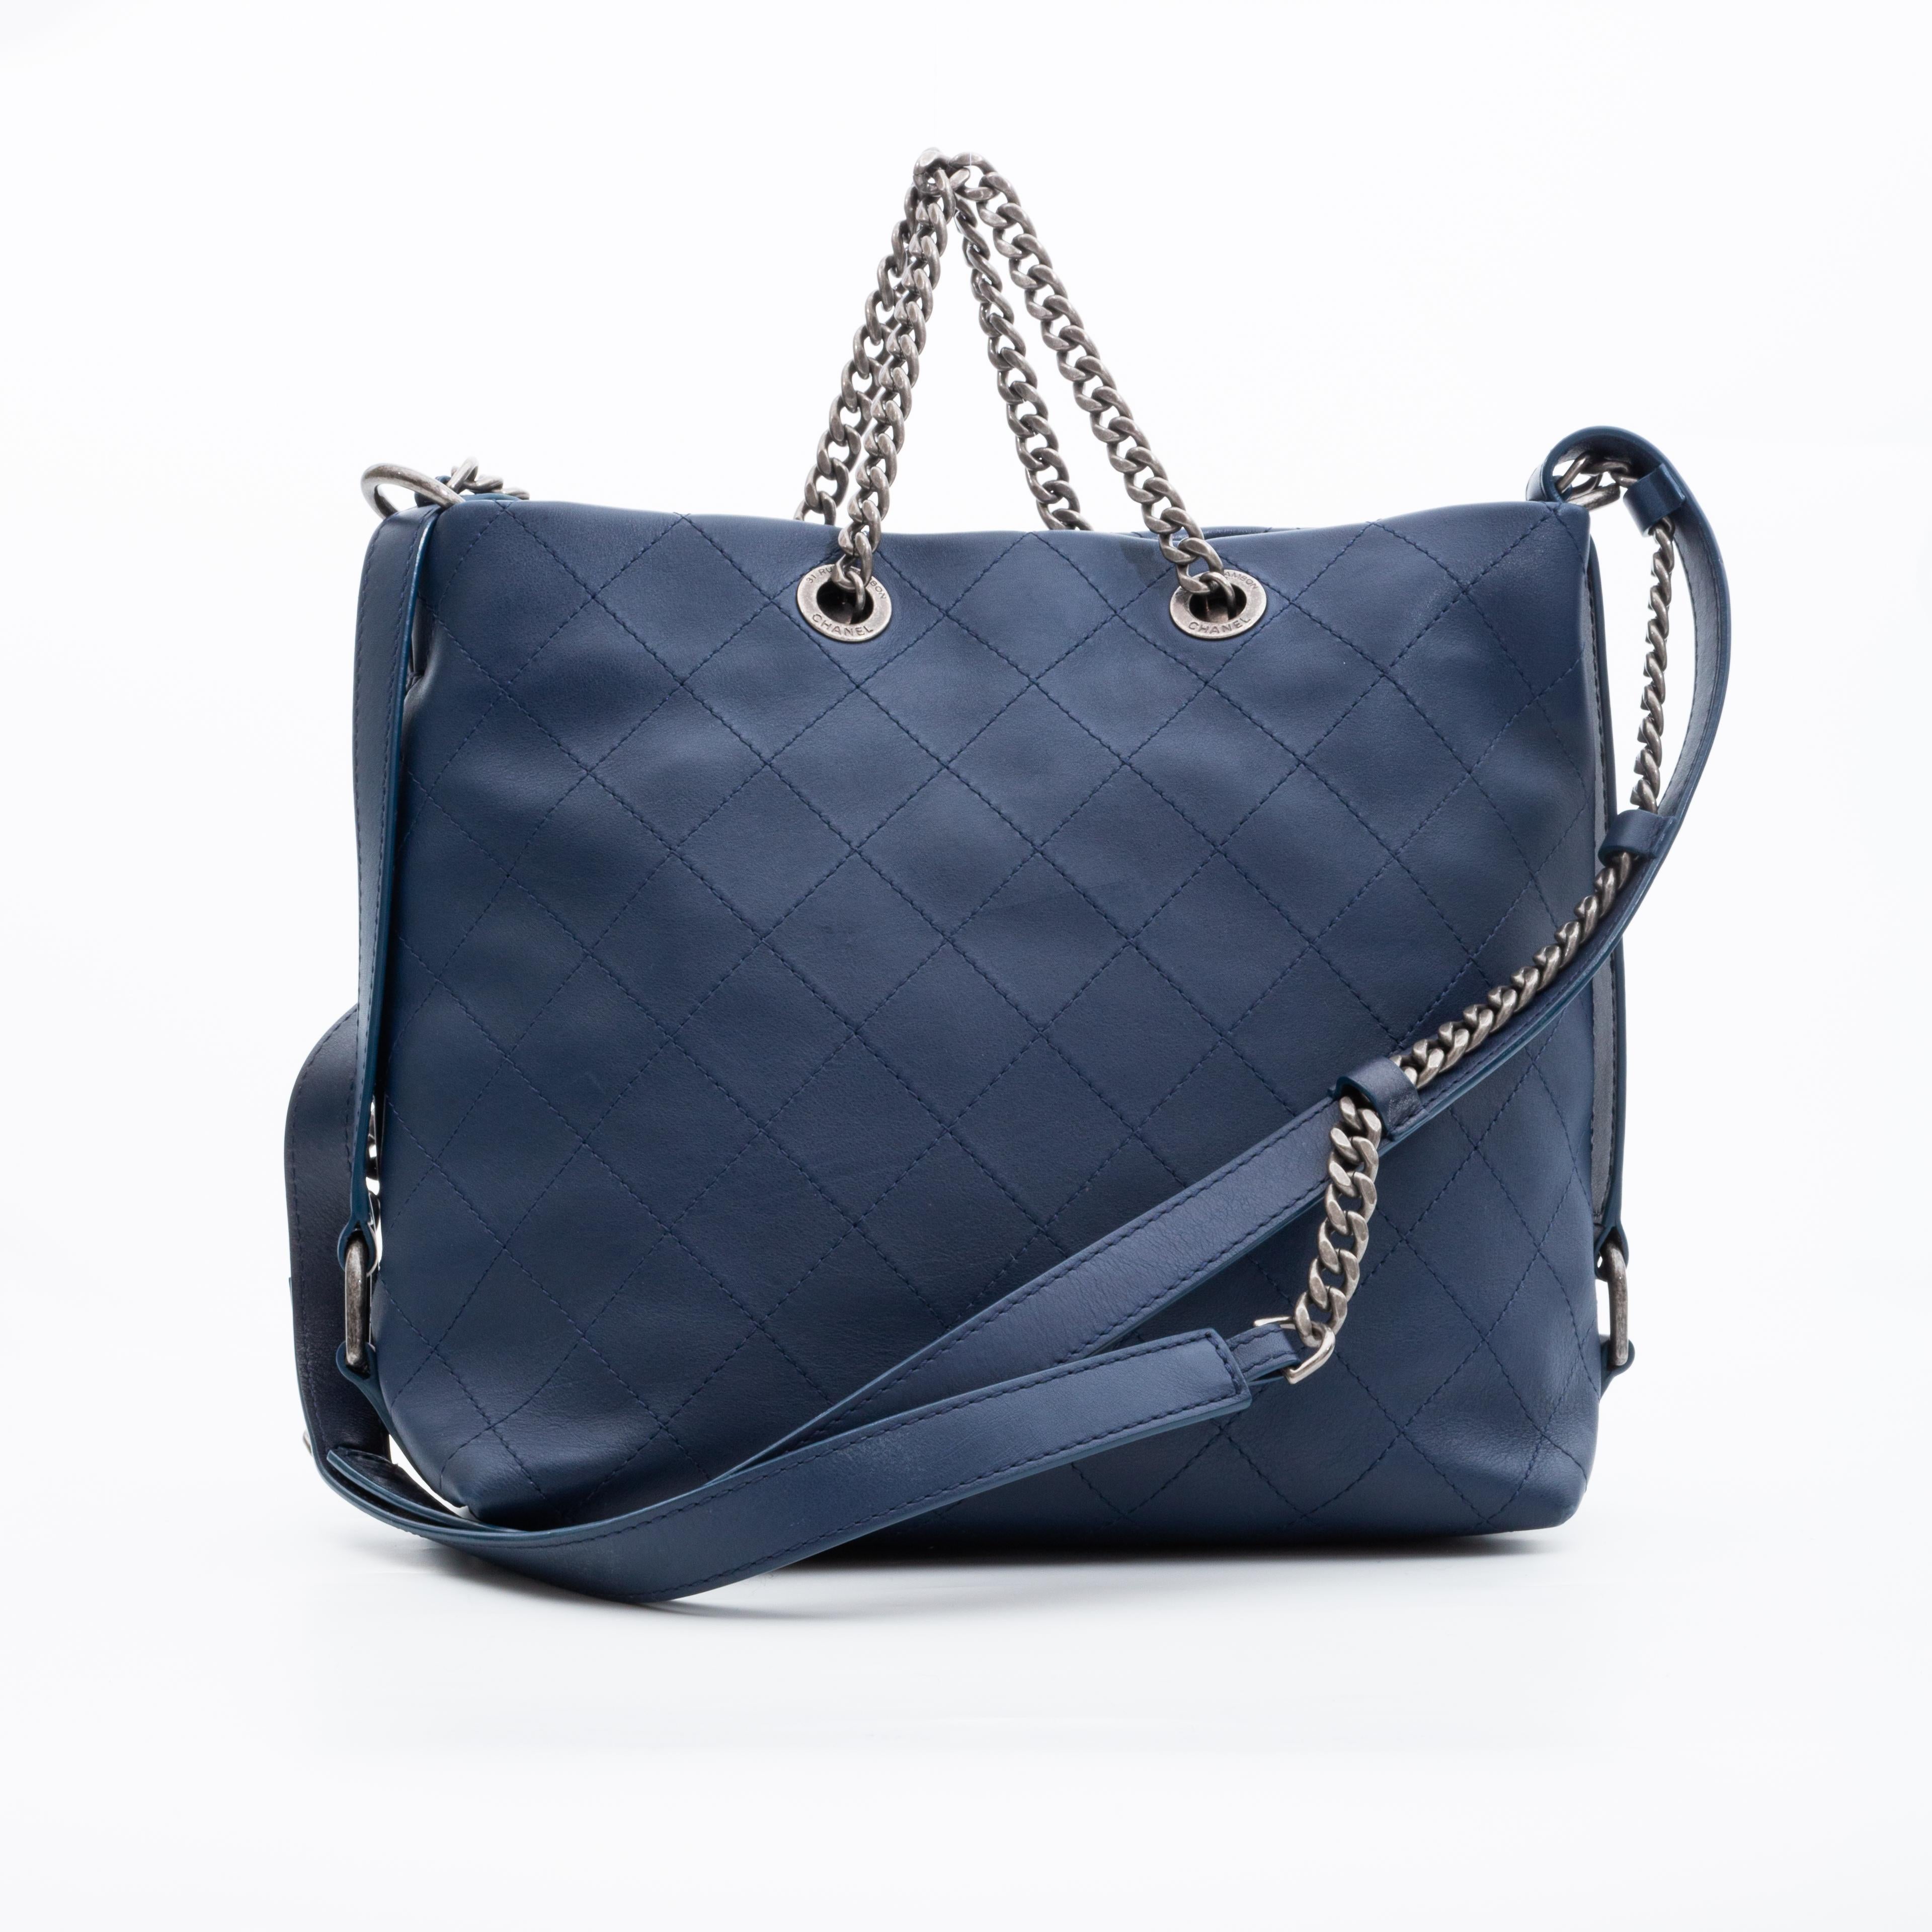 Aus der Collection'S 2017. Diese Chanel Hobo-Tasche ist aus weichem, gestepptem Kalbsleder in Blau gefertigt und hat eine slouching Form. Die Tasche ist mit Ruthenium (Rotguss) beschlagen, hat einen langen, flachen Schulter- oder Umhängeriemen aus